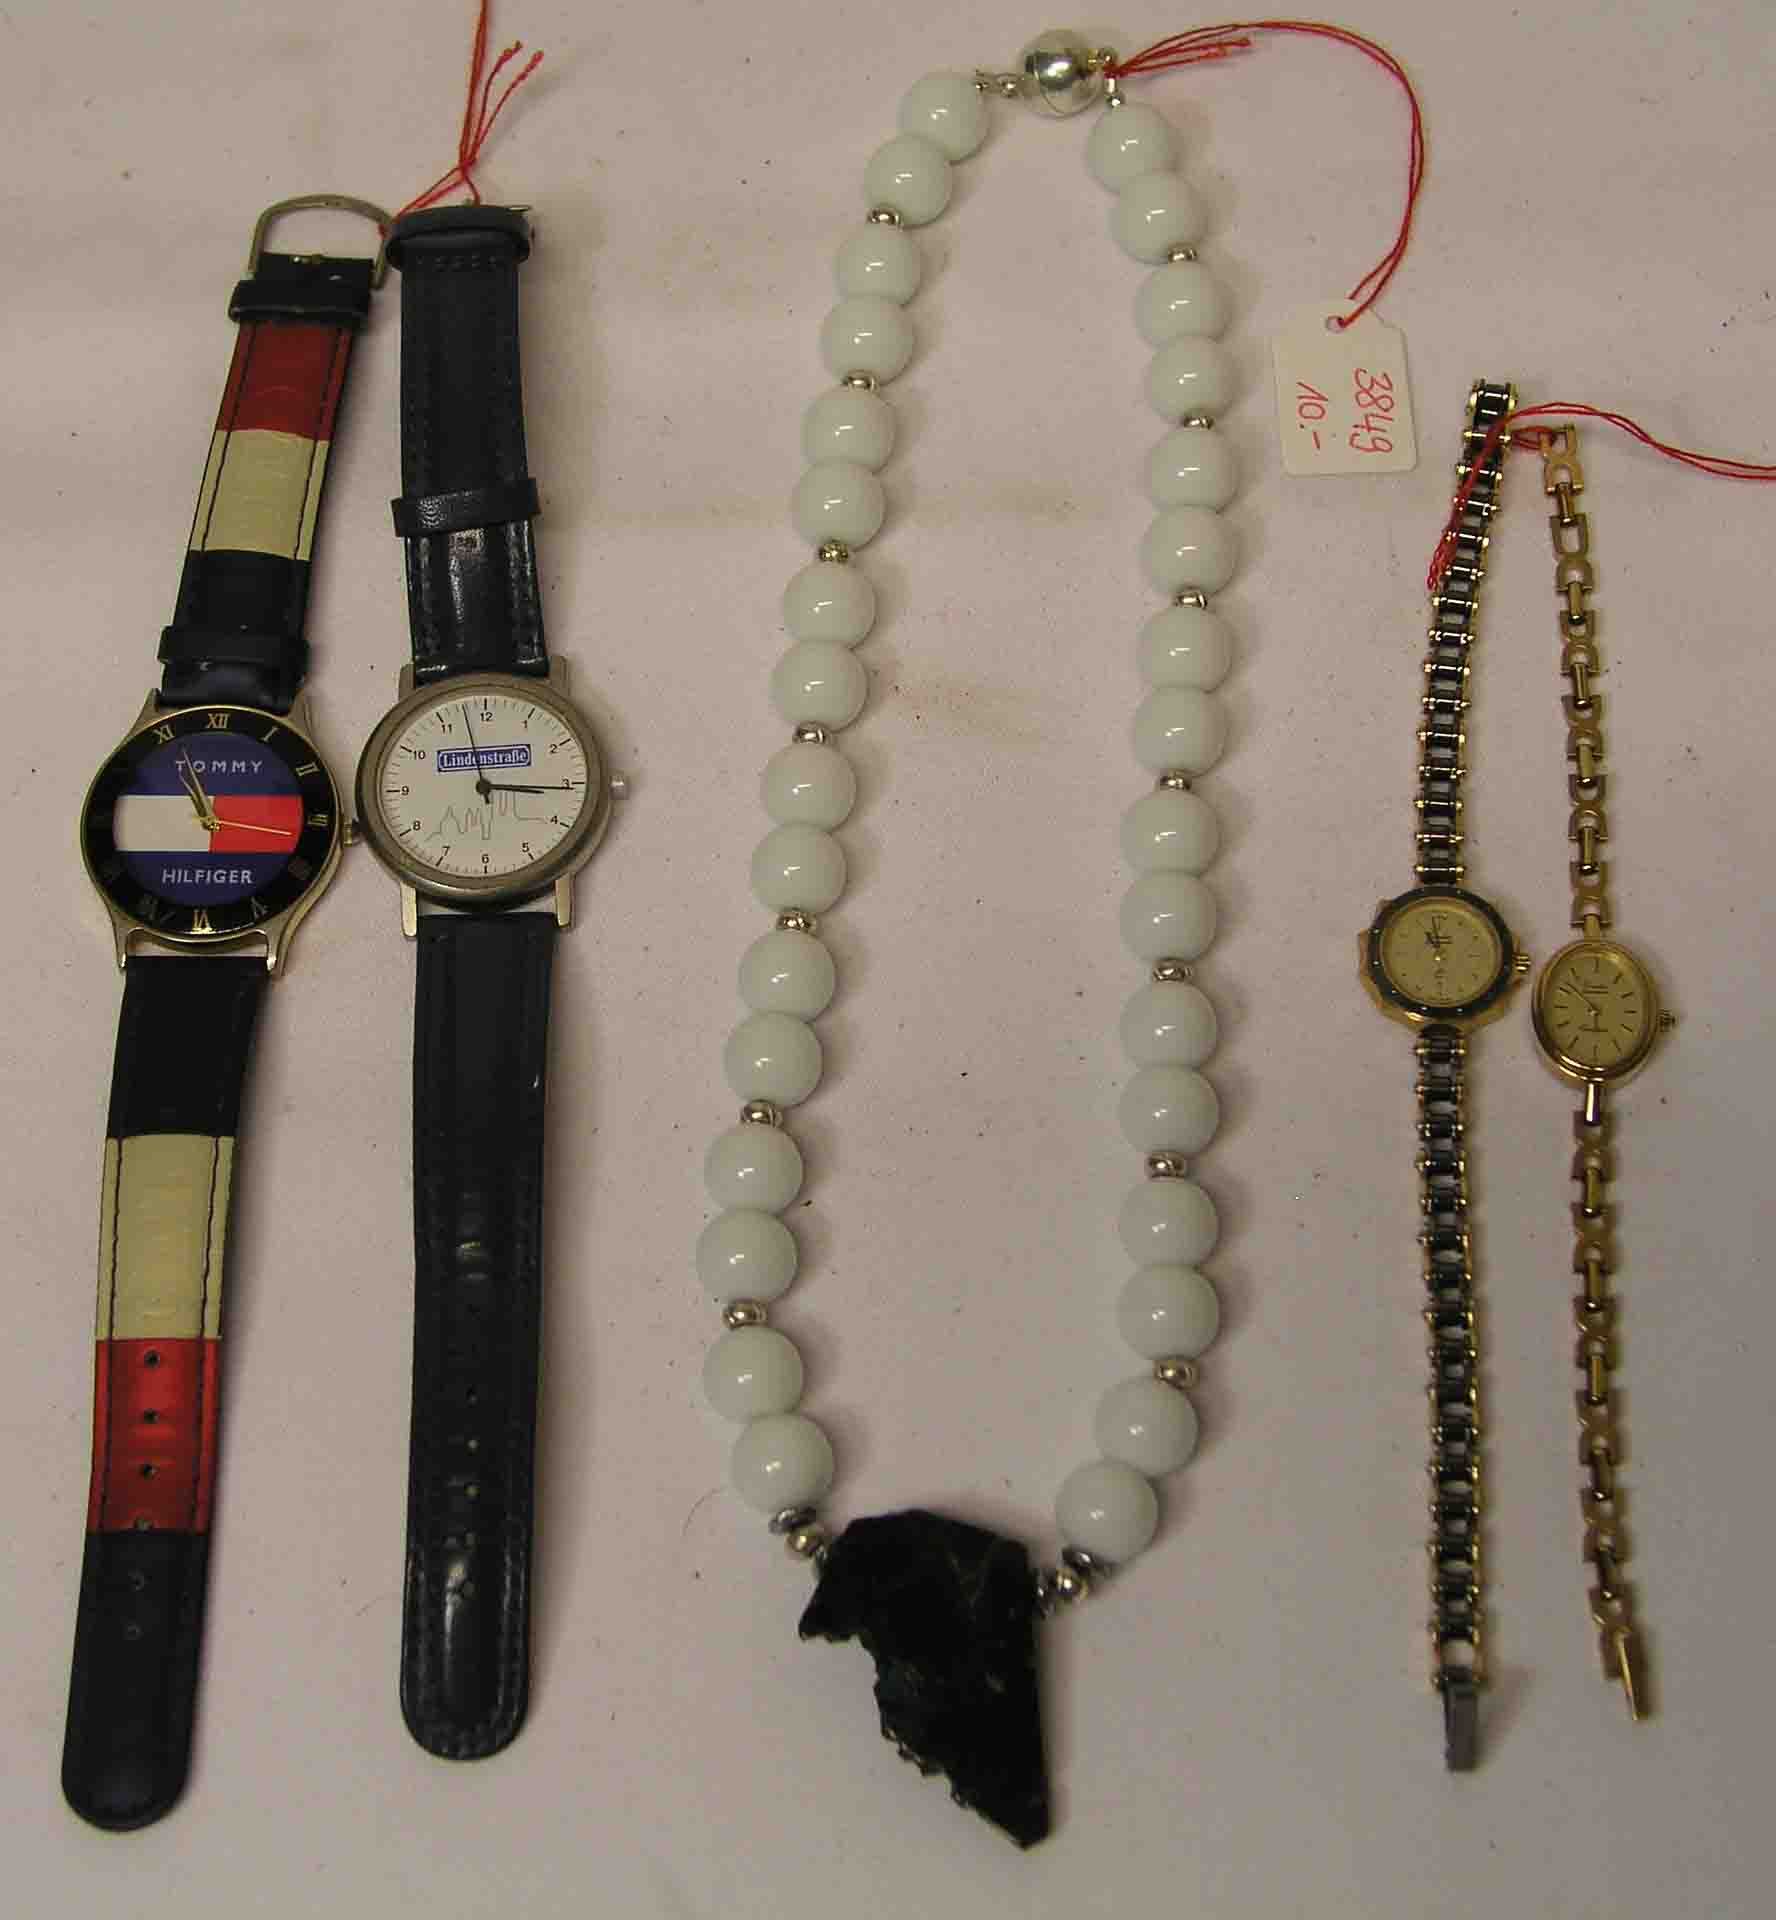 Halskette und vier Armbanduhren. Kette aus weißen Kugeln, mittiger grüner Schmuckstein.